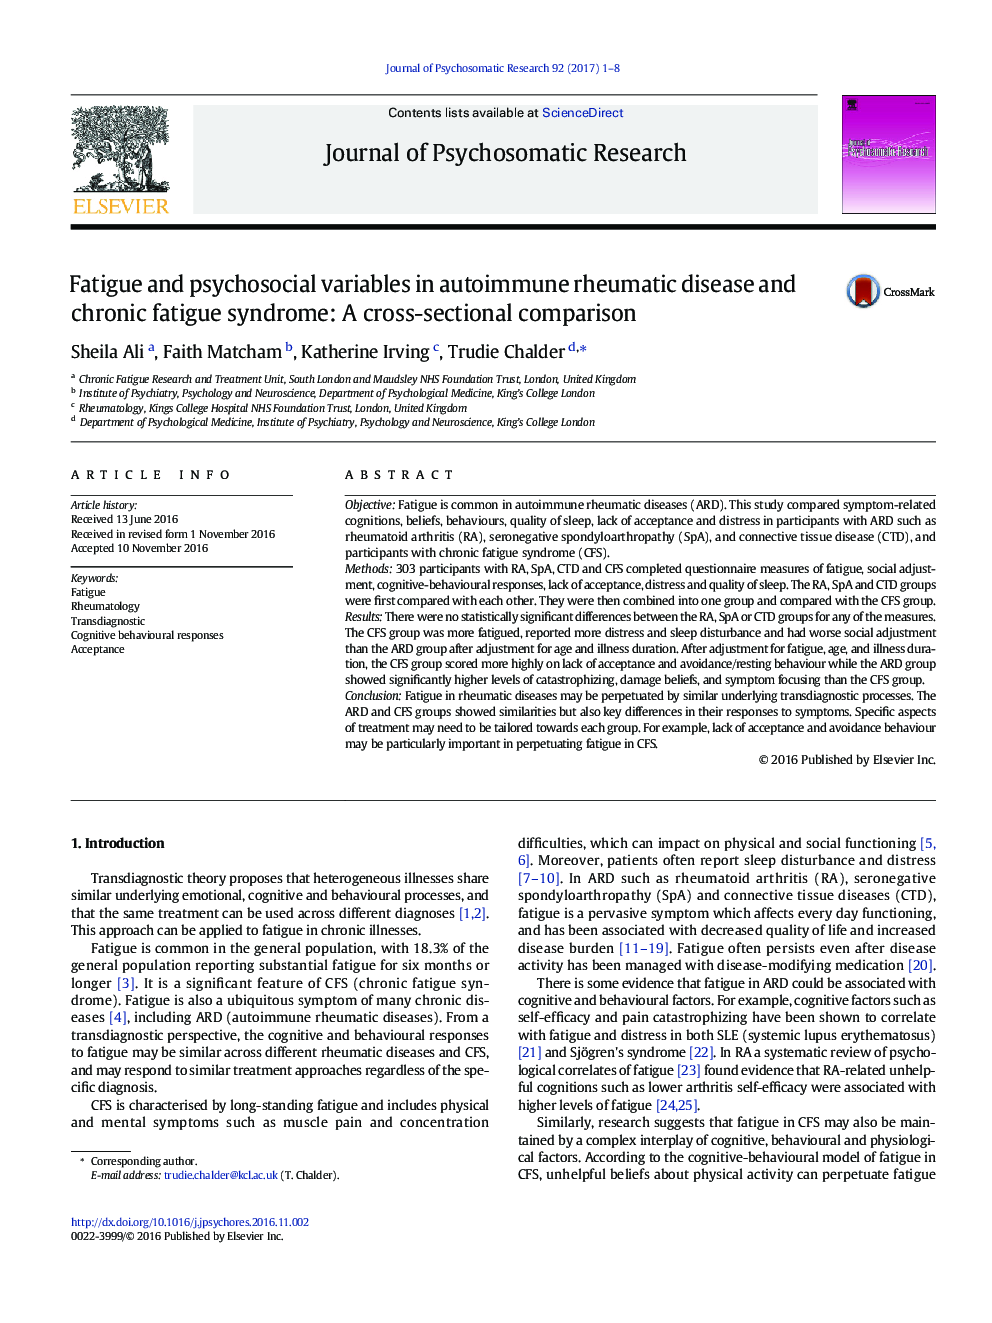 خستگی و متغیرهای روان شناختی در بیماری های روماتیسمی خودایمنی و سندرم خستگی مزمن: مقایسه مقطعی 